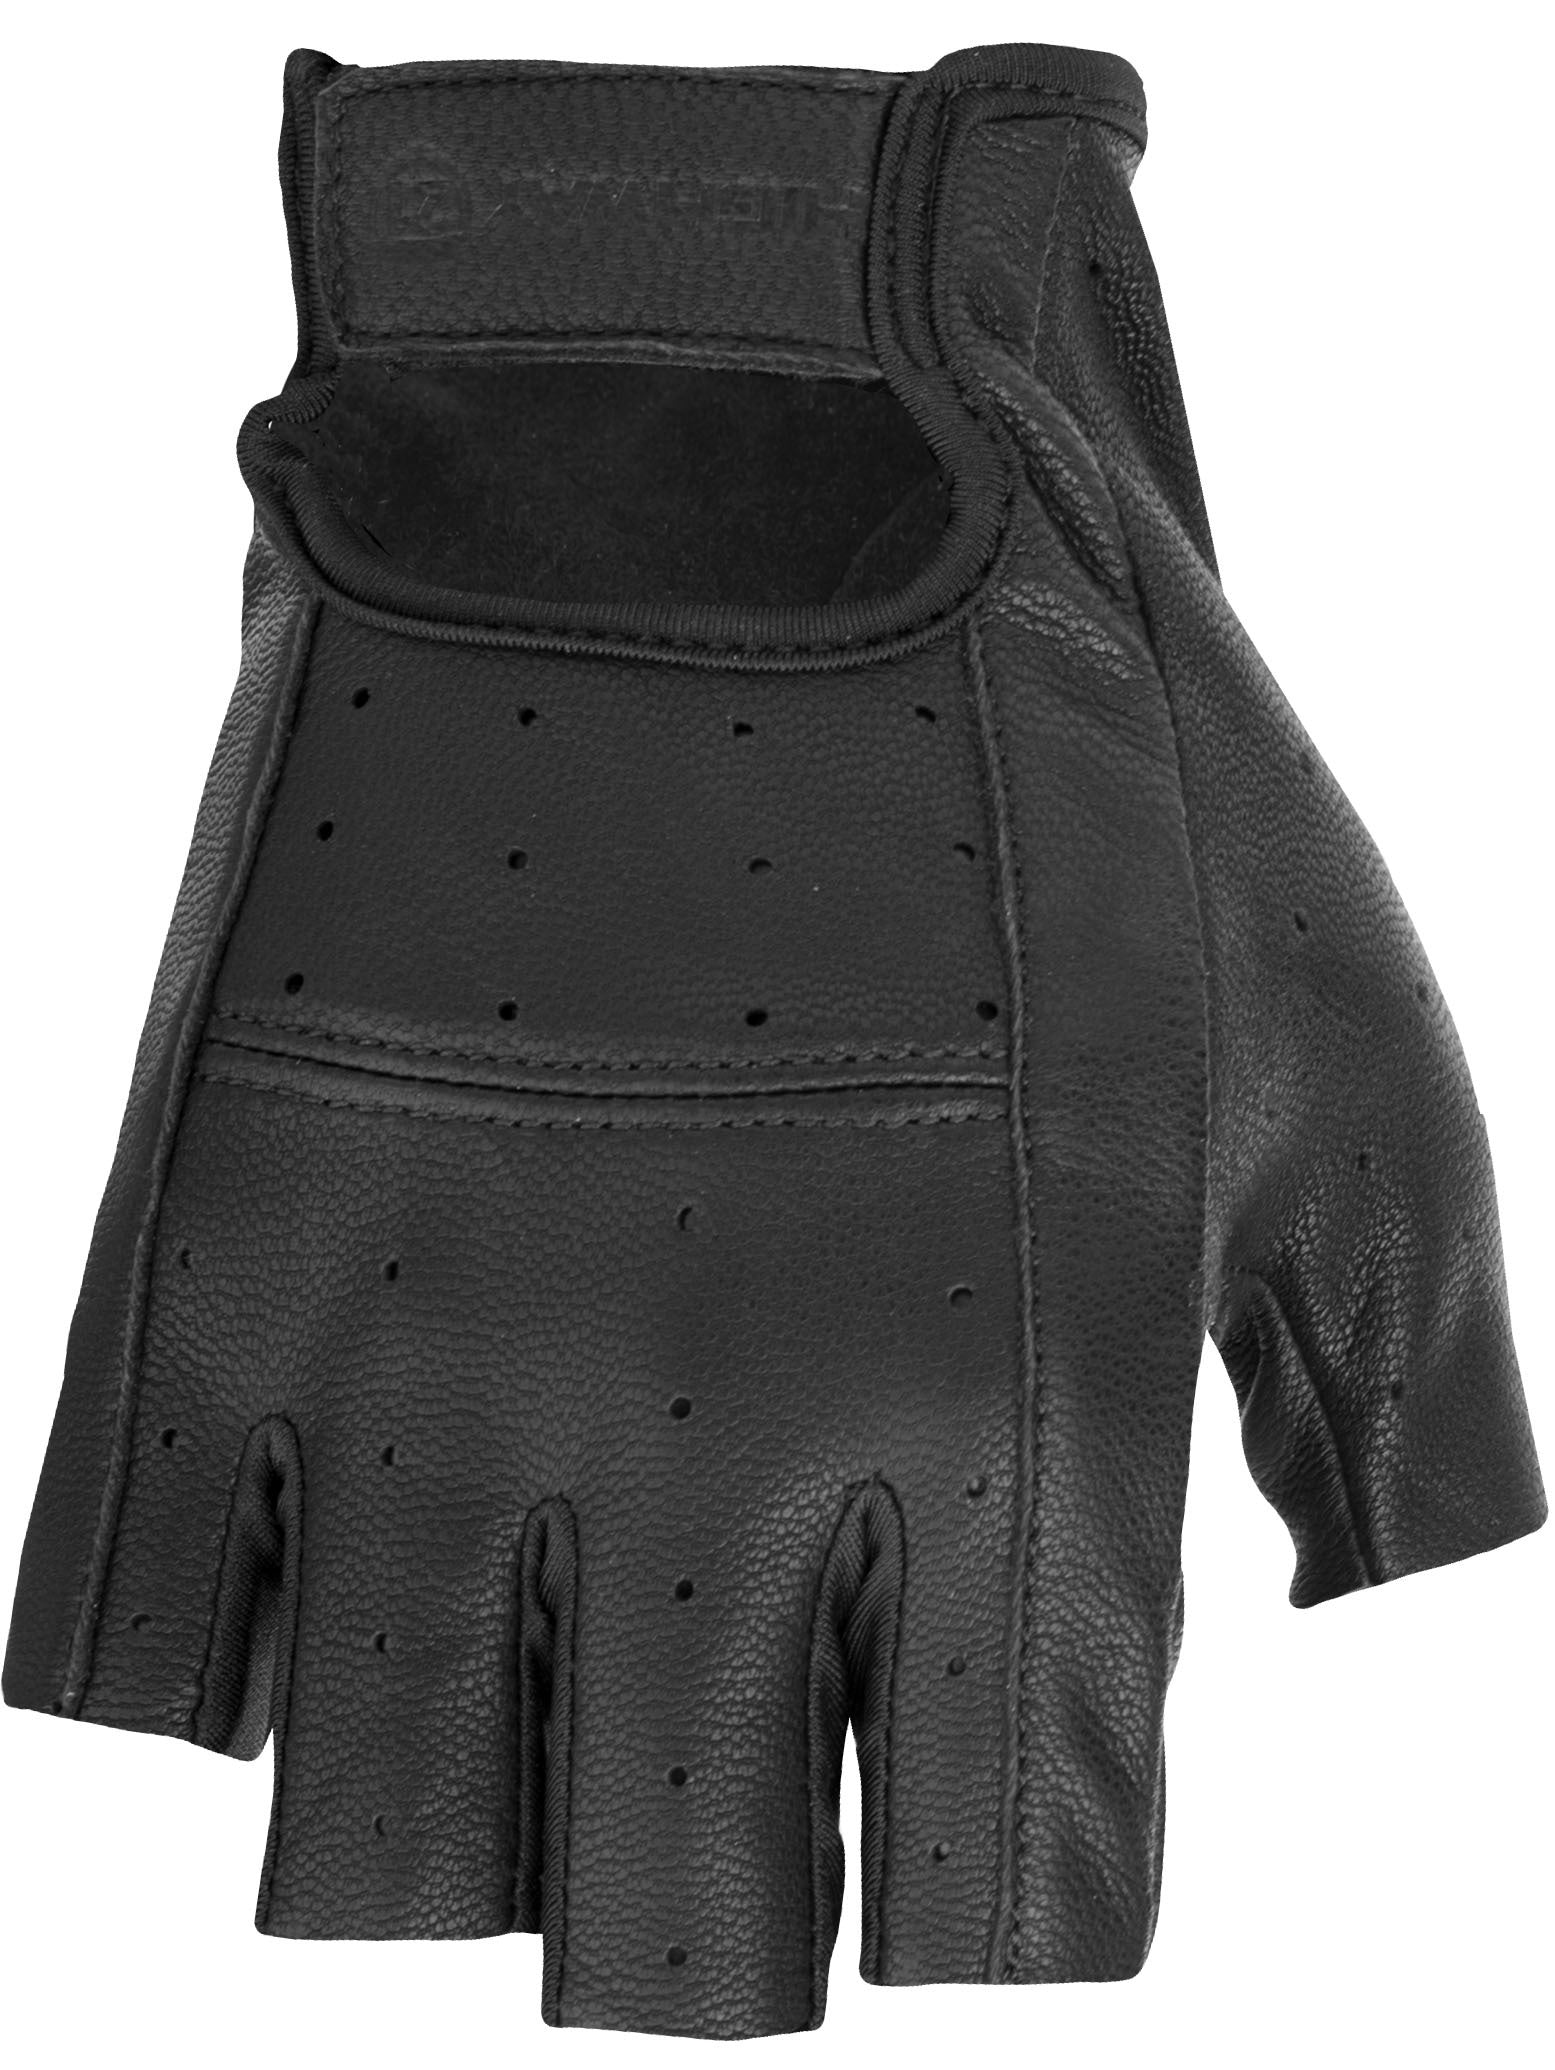 Ranger Gloves Black 5x